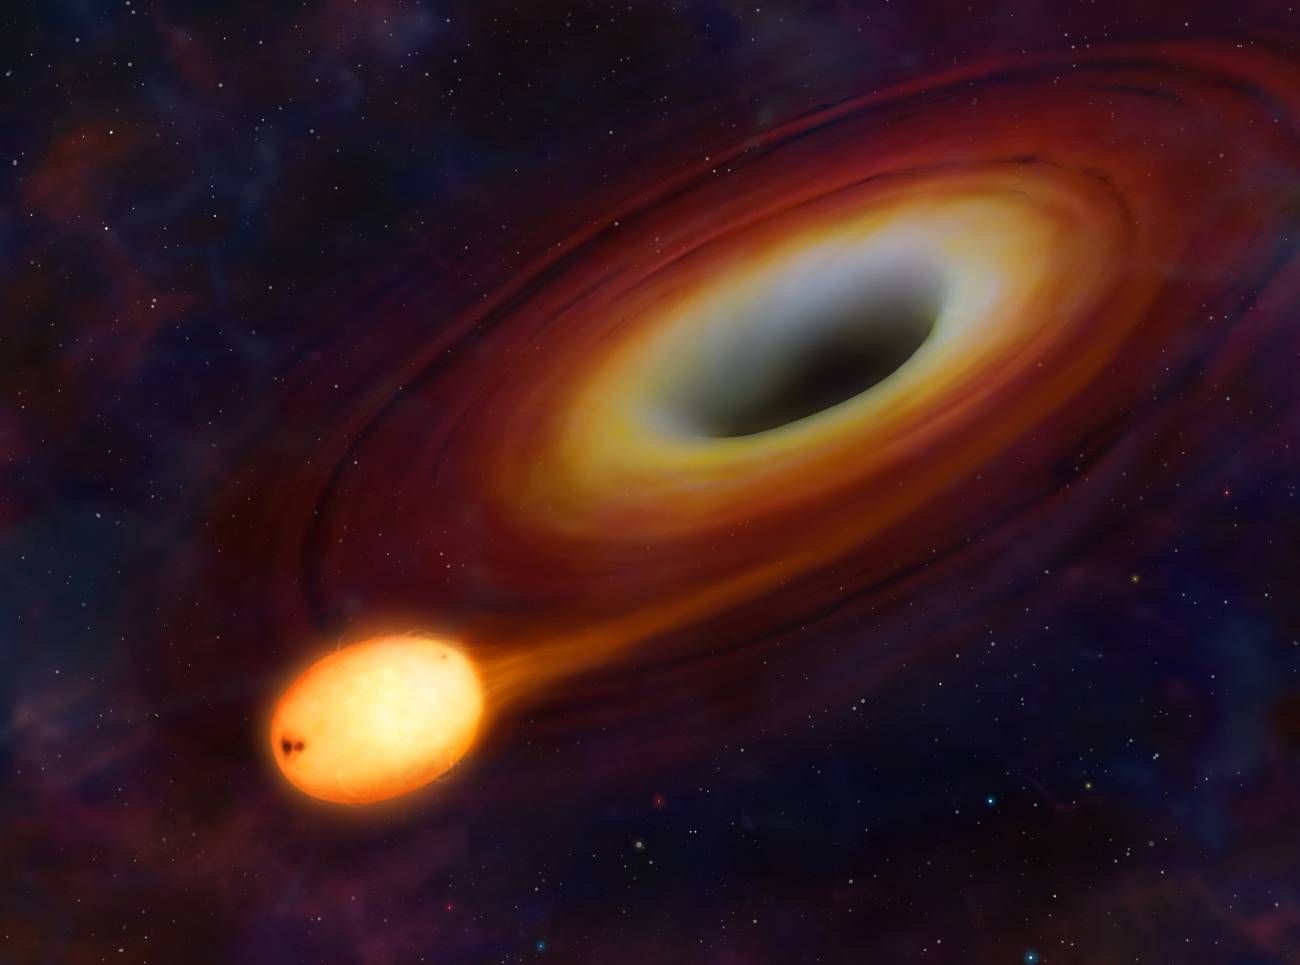 Una explosión de rayos gamma sugiere que un agujero negro 'engulló' a una estrella